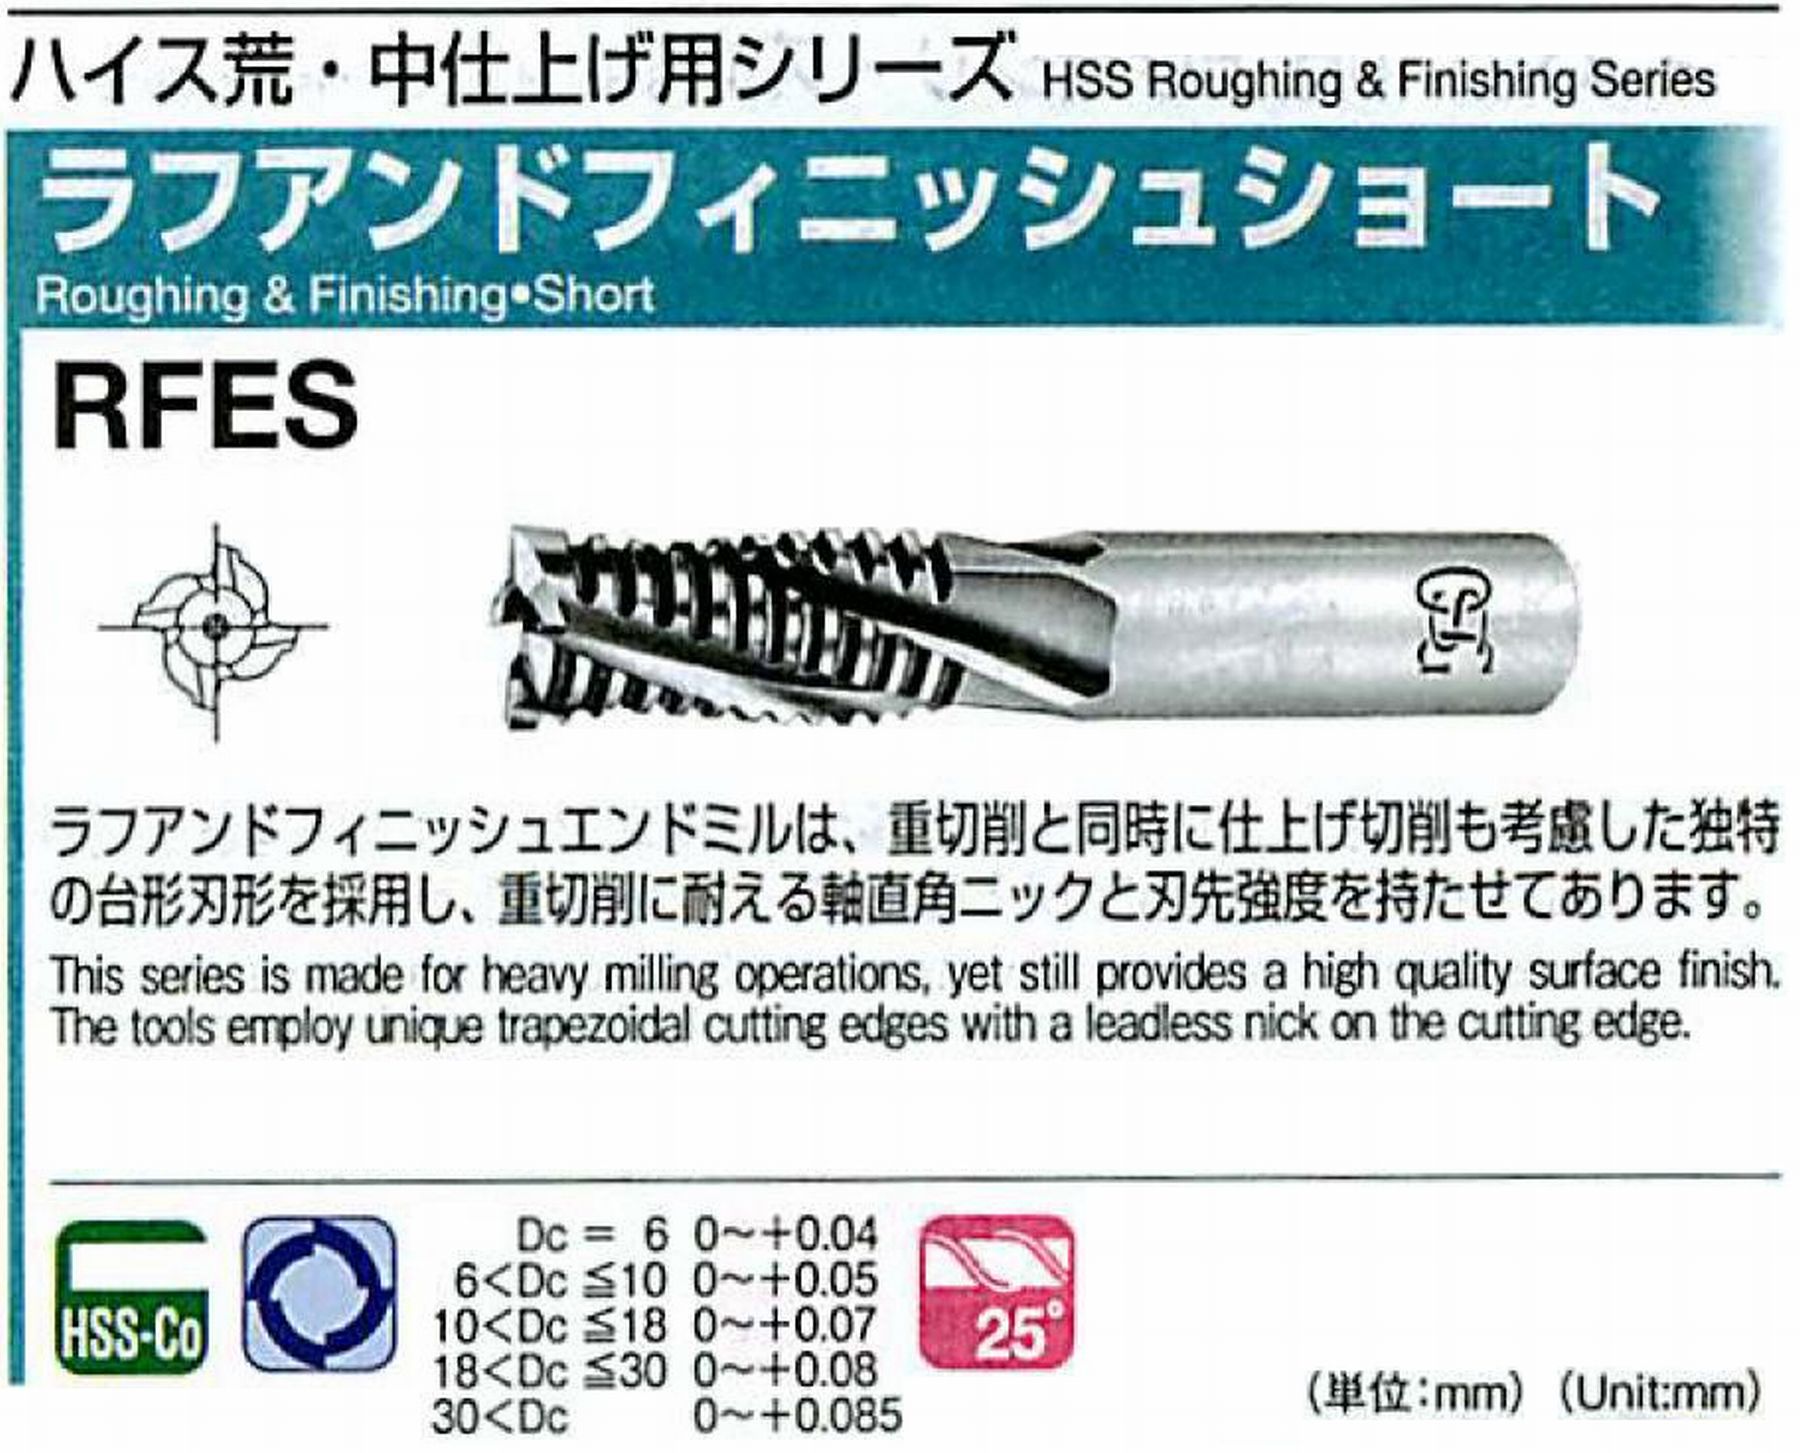 オーエスジー/OSG ラフアンドフィニッシュ ショート RFES 外径20 全長110 刃長45 シャンク径20mm 刃数4